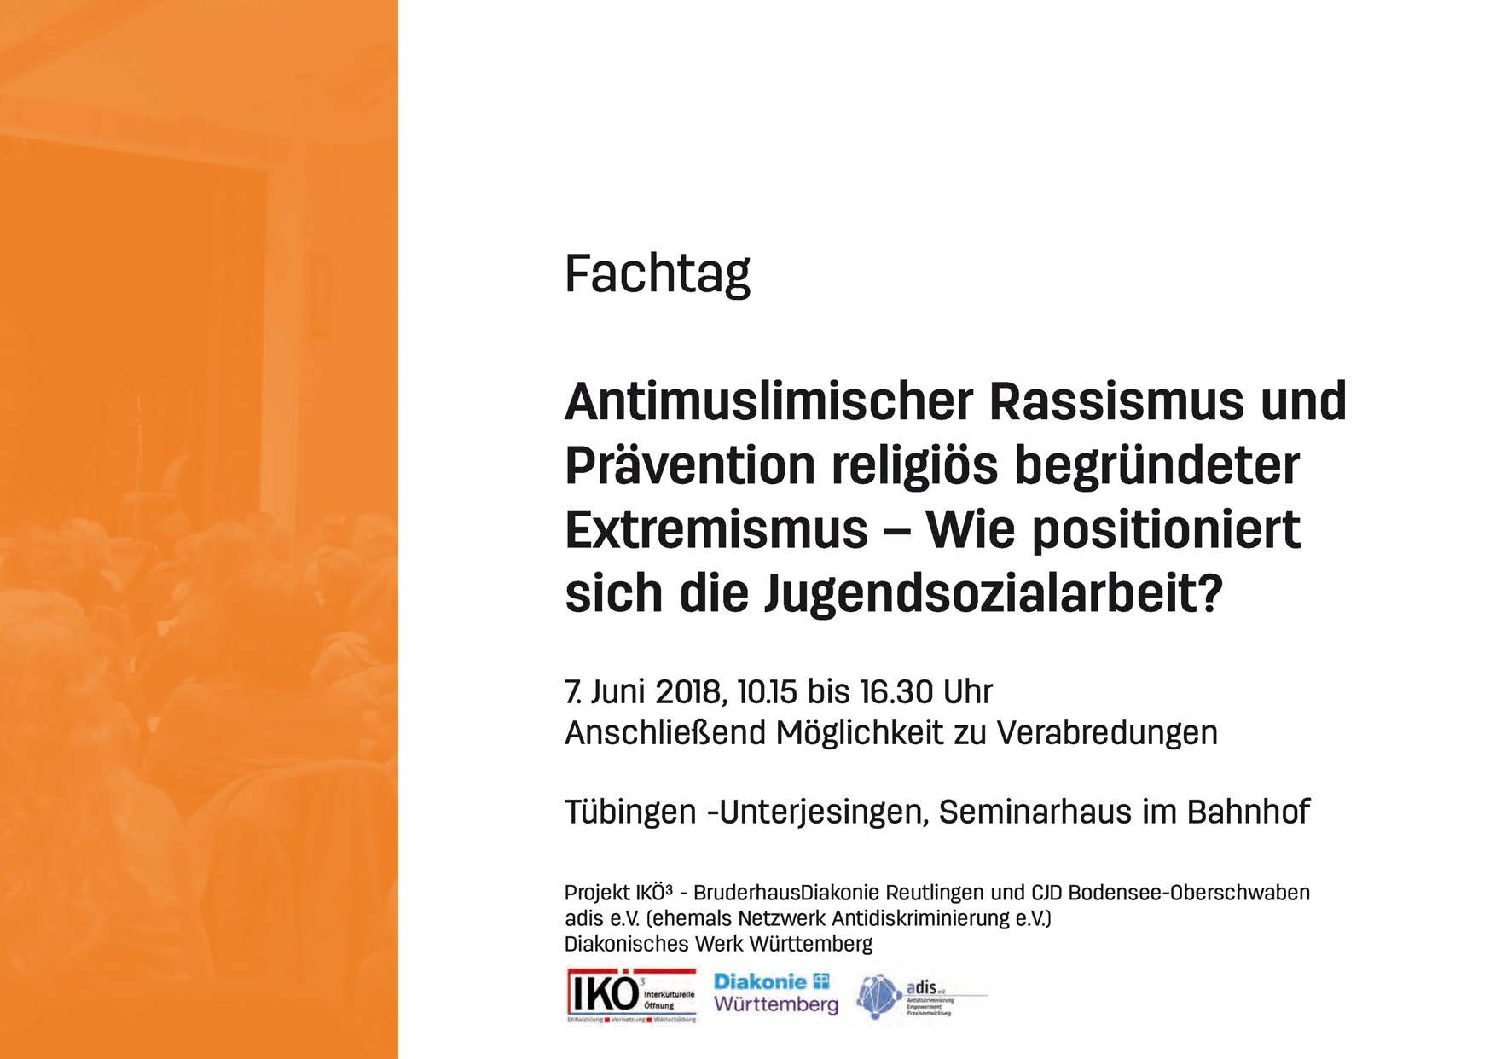 Fachtag am 7.6.18: Antimuslimischer Rassismus und Prävention religiös begründeter Extremismus